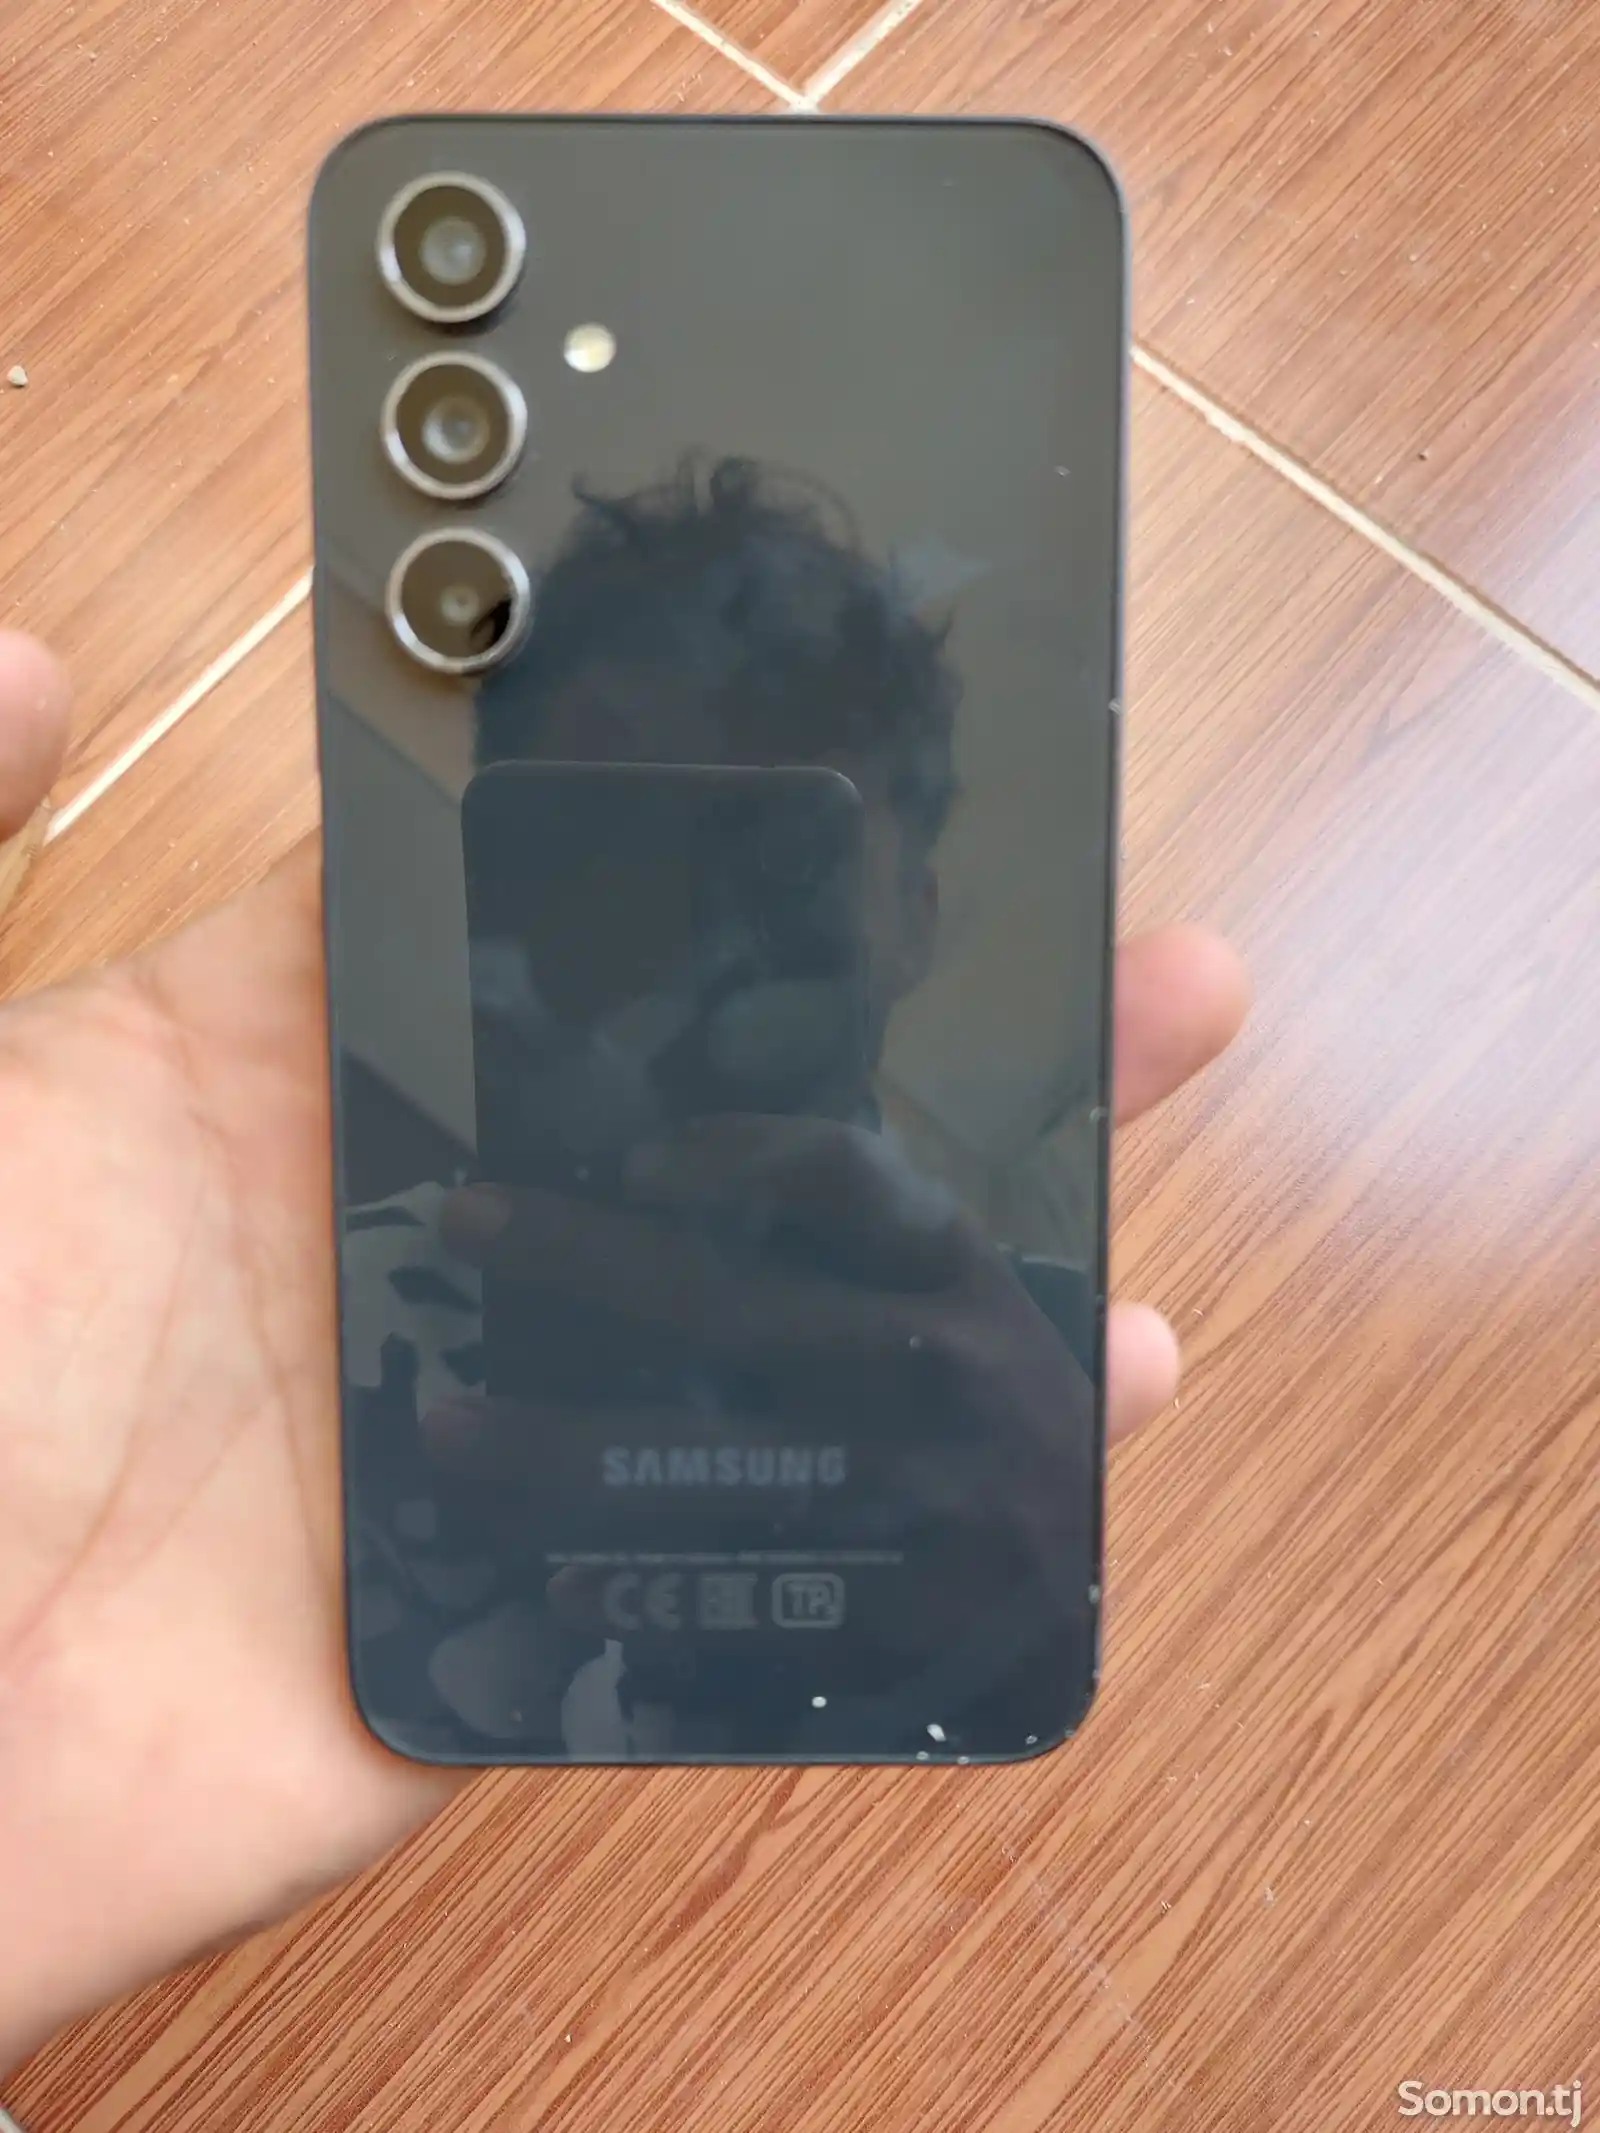 Samsung Galaxy A54-2